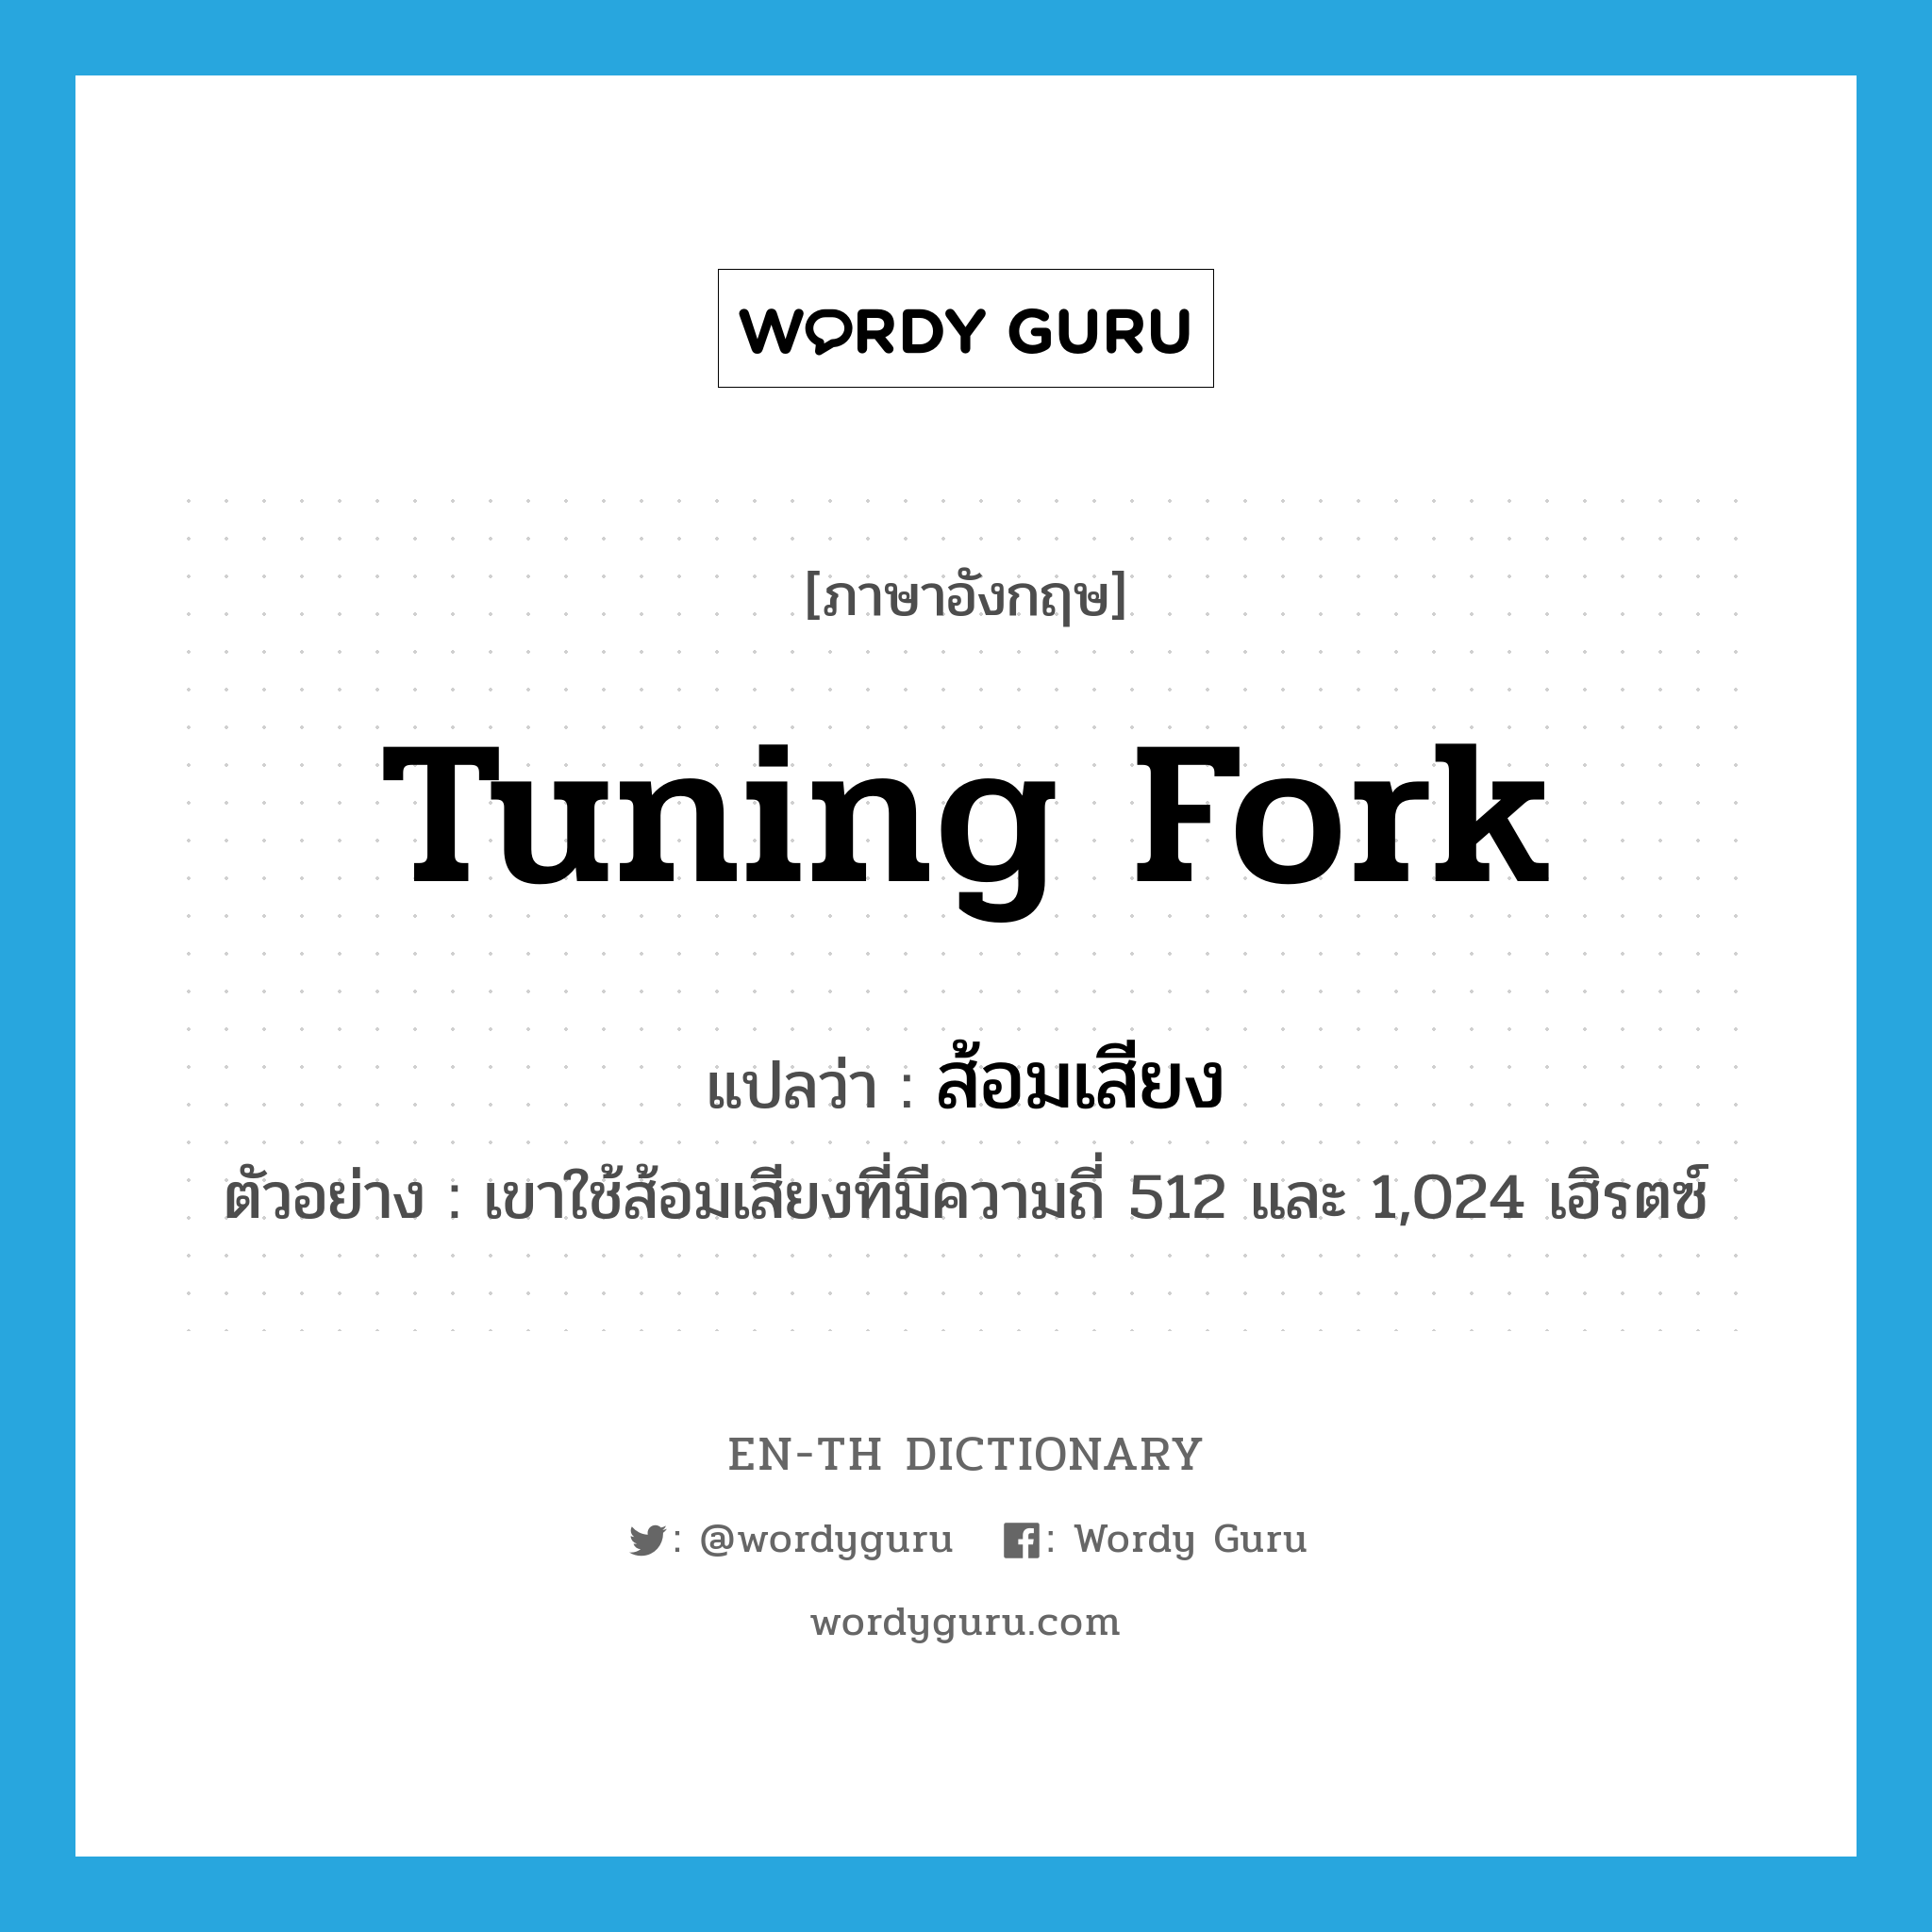 tuning fork แปลว่า?, คำศัพท์ภาษาอังกฤษ tuning fork แปลว่า ส้อมเสียง ประเภท N ตัวอย่าง เขาใช้ส้อมเสียงที่มีความถี่ 512 และ 1,024 เฮิรตซ์ หมวด N